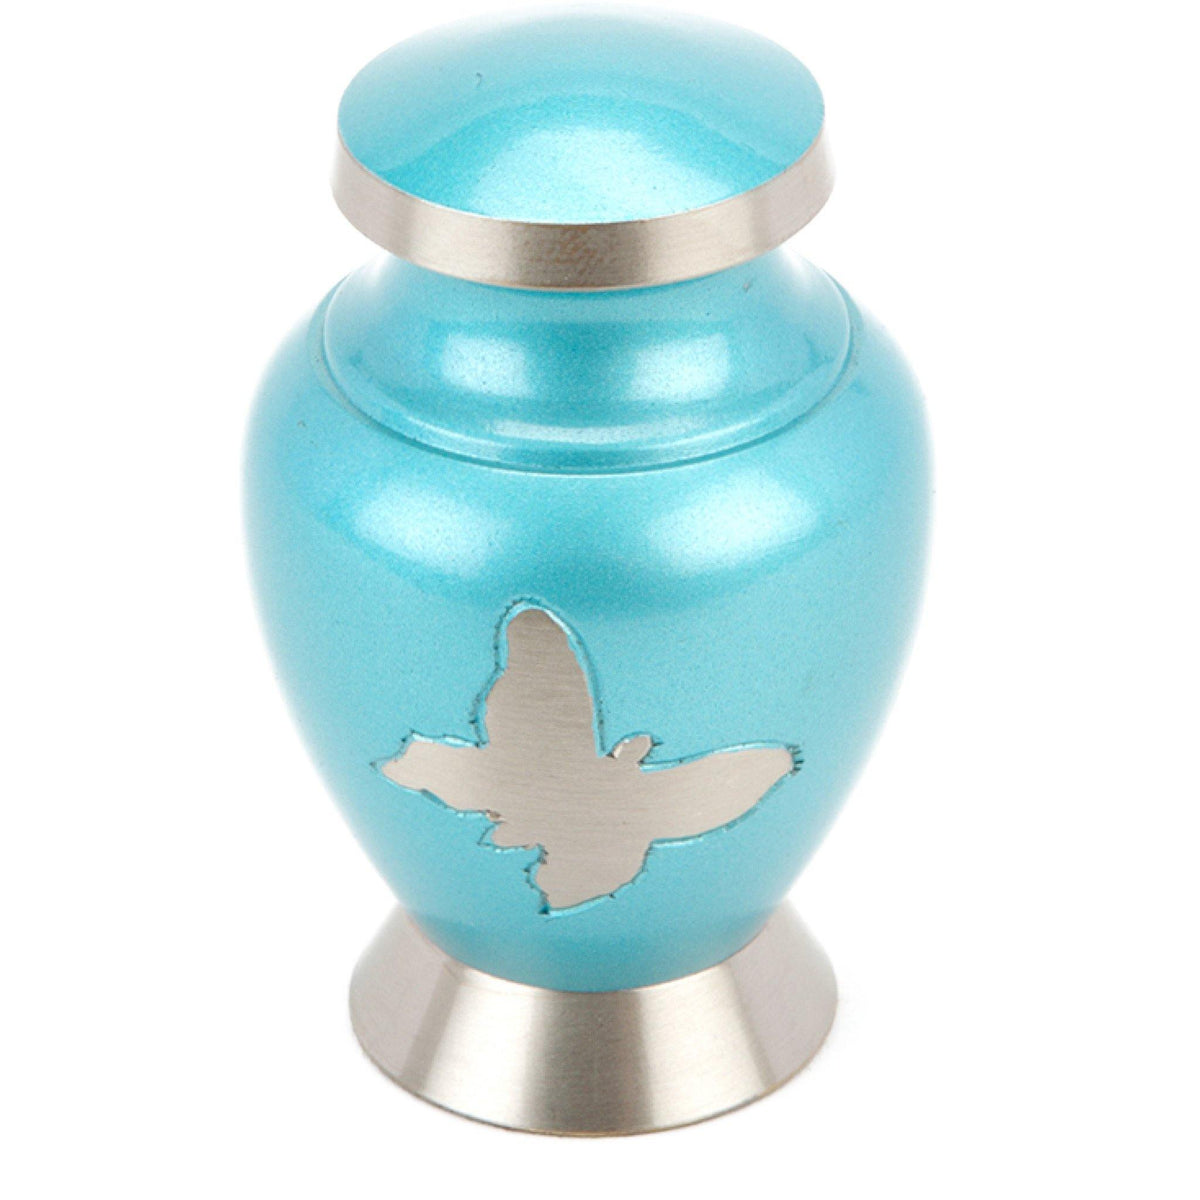 Taplow Teal Cremation Ashes Keepsake Mini Urn Urns UK